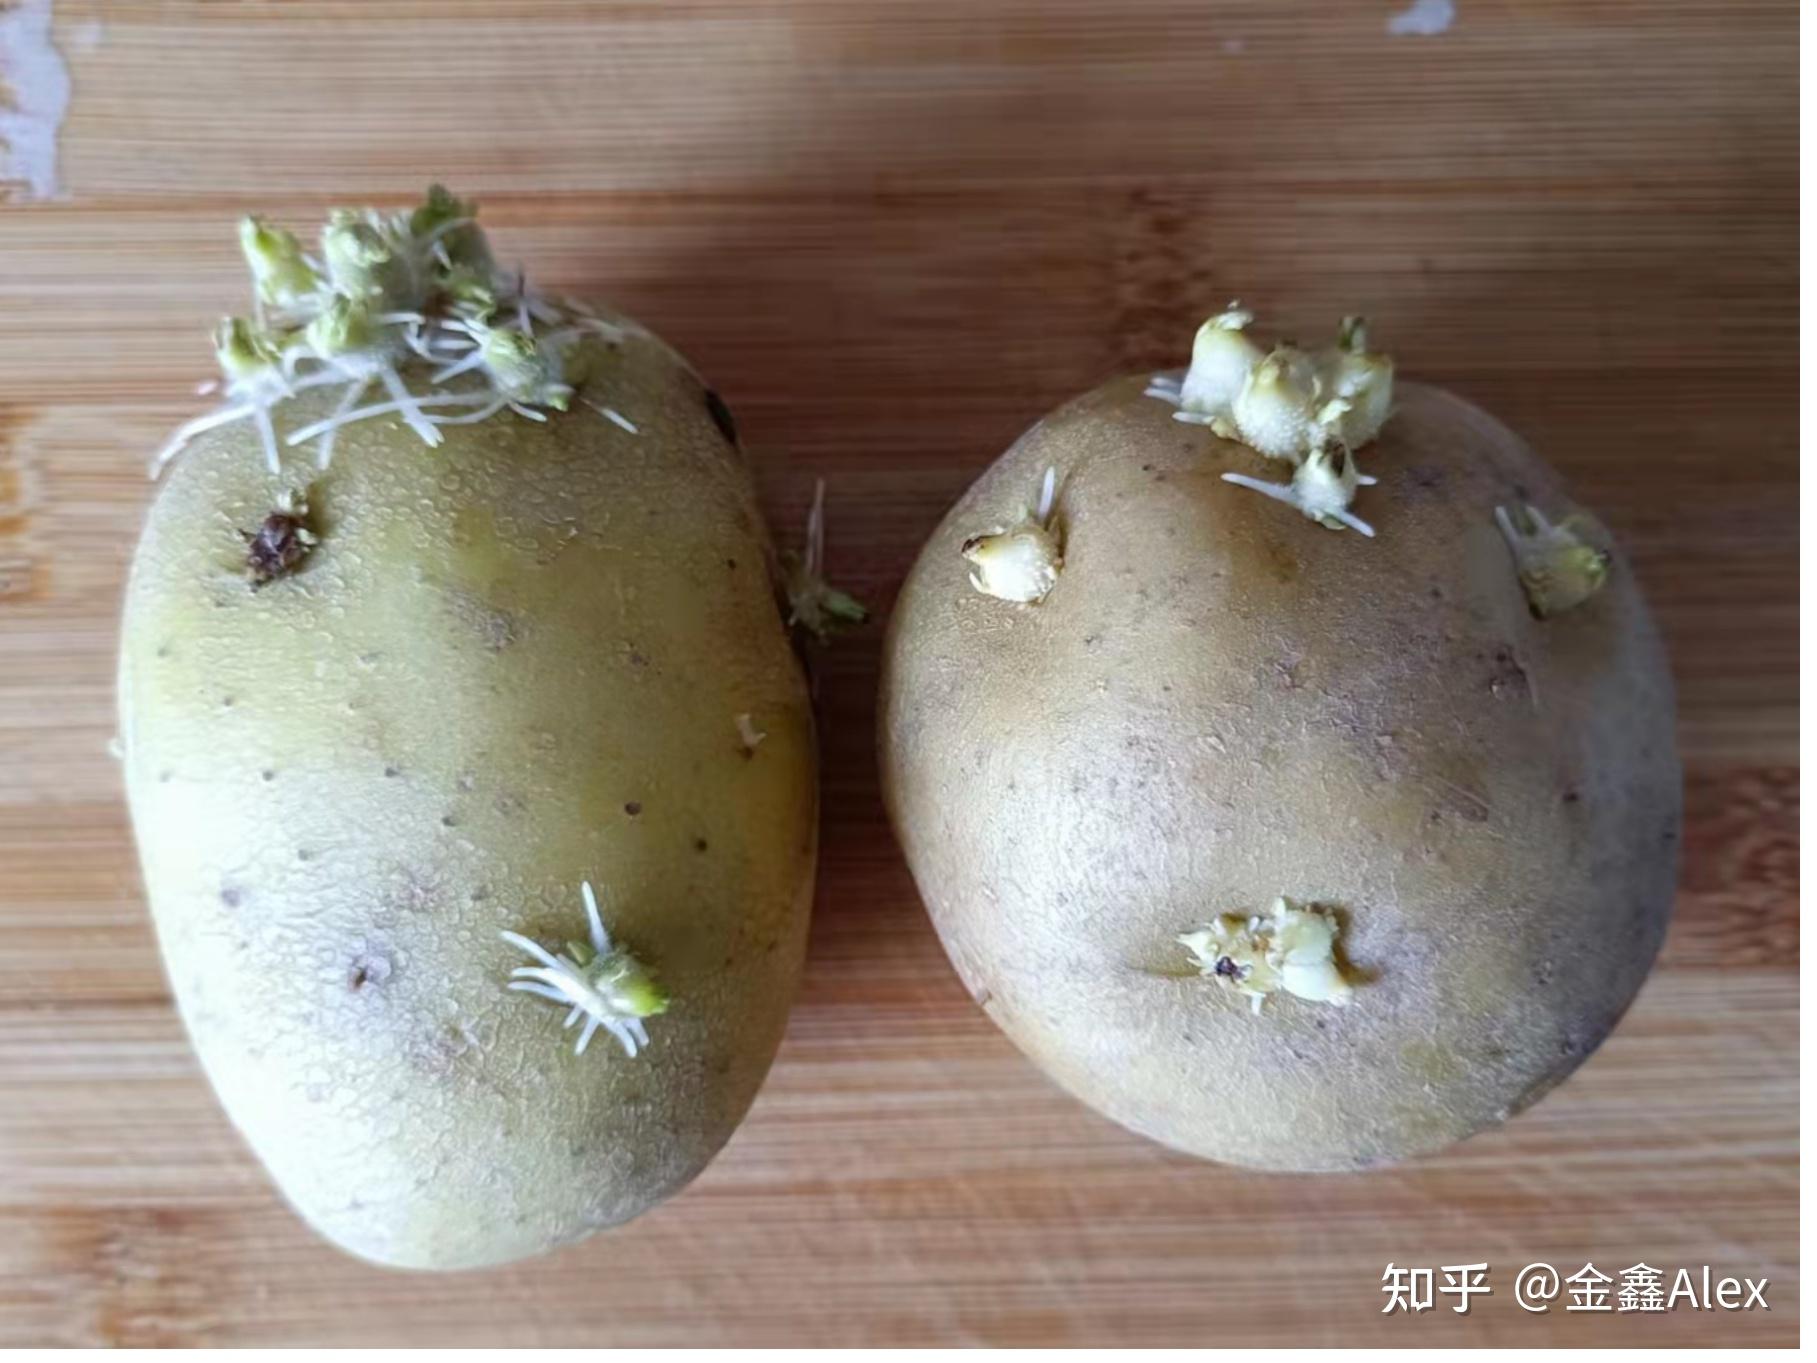 发芽的土豆能吃吗？坐标上海。 - 知乎